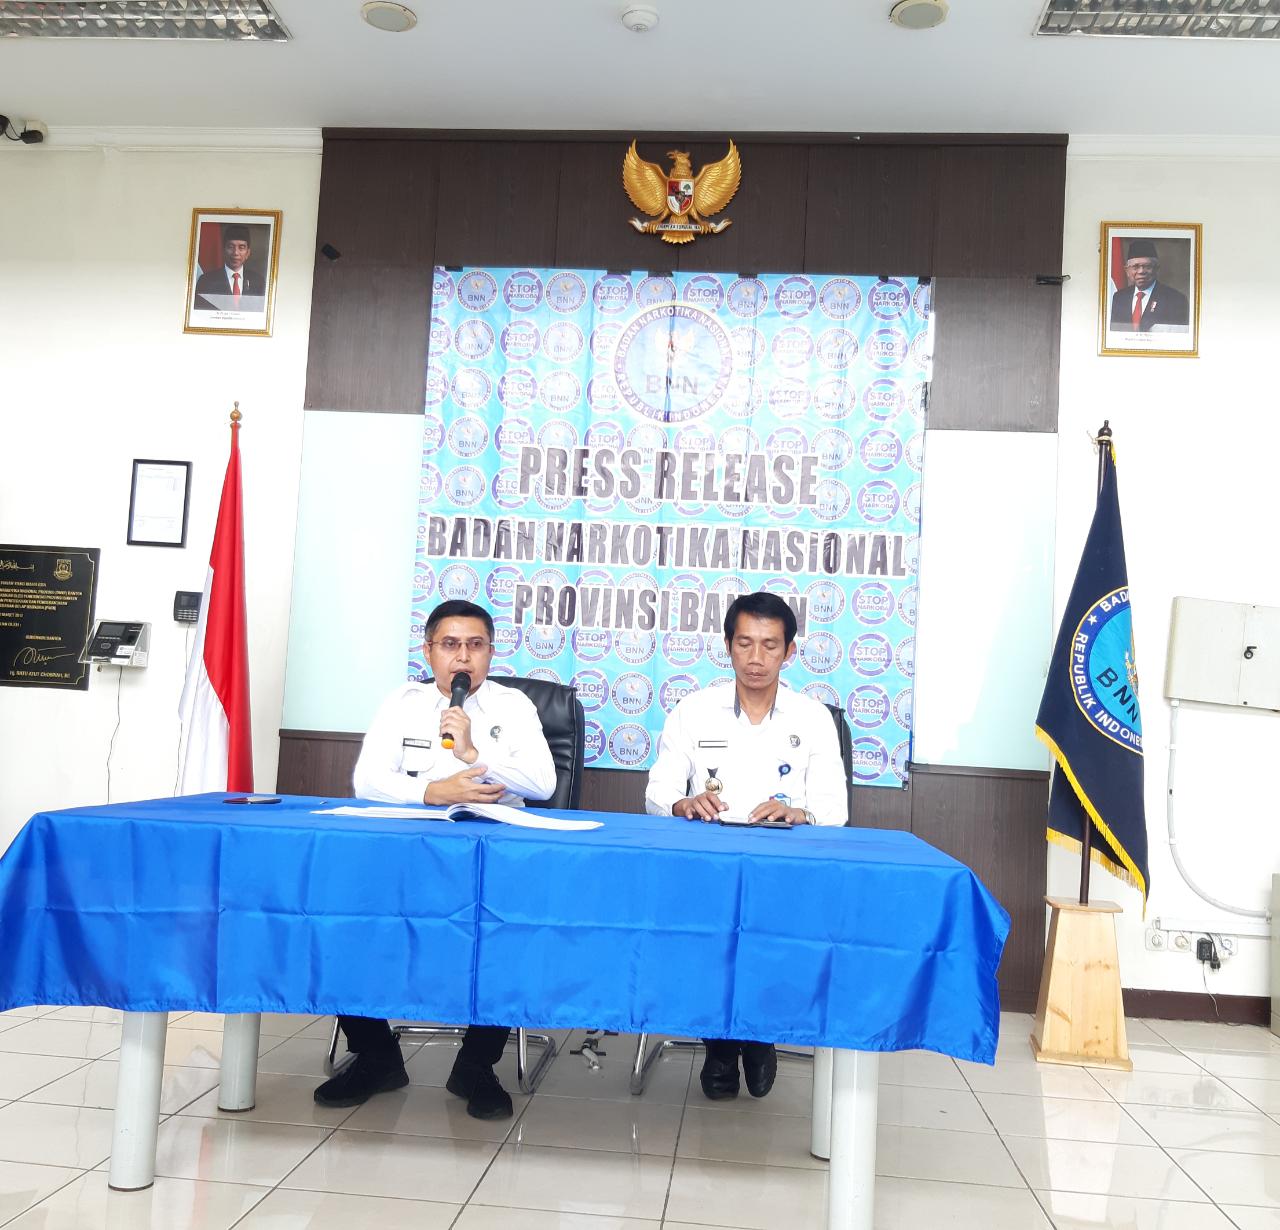 Capaian Kegiatan BNN Provinsi Banten Tahun Anggaran 2019 Dalam Rangka Press Release Akhir Tahun 2019